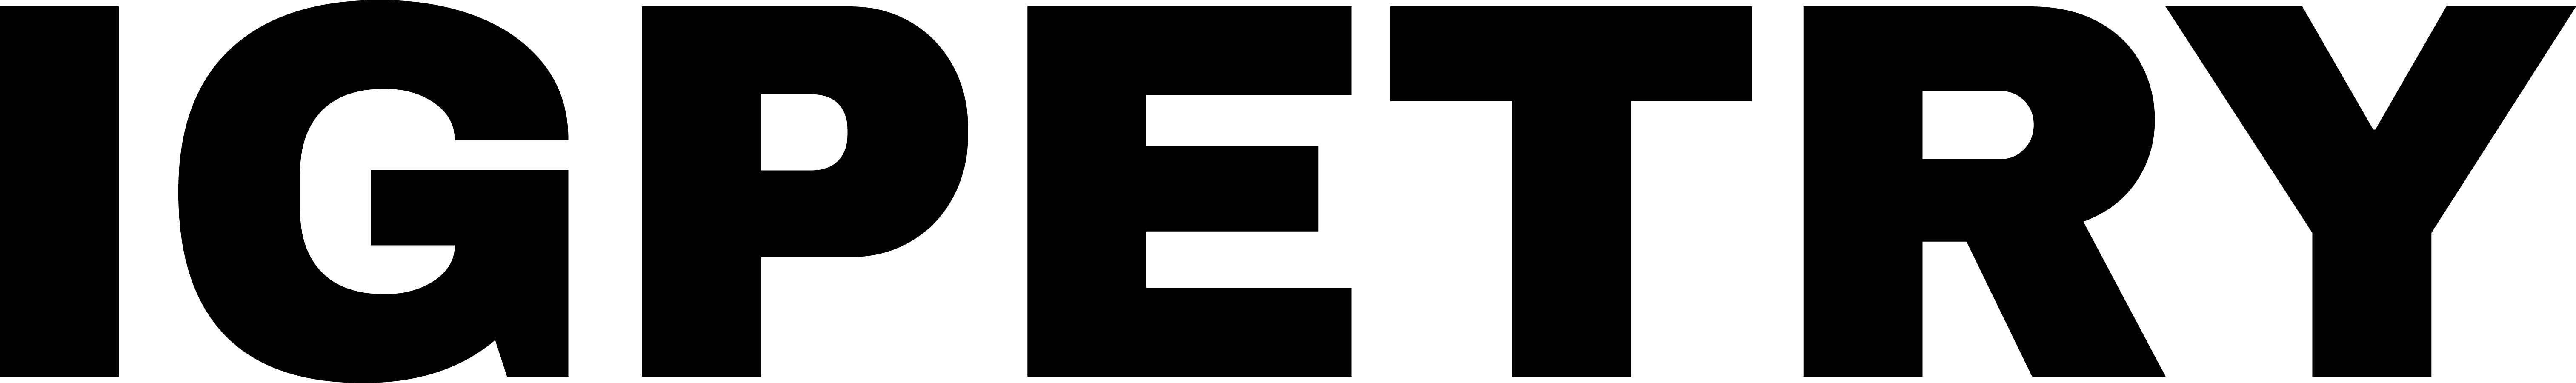 B_Logotipo